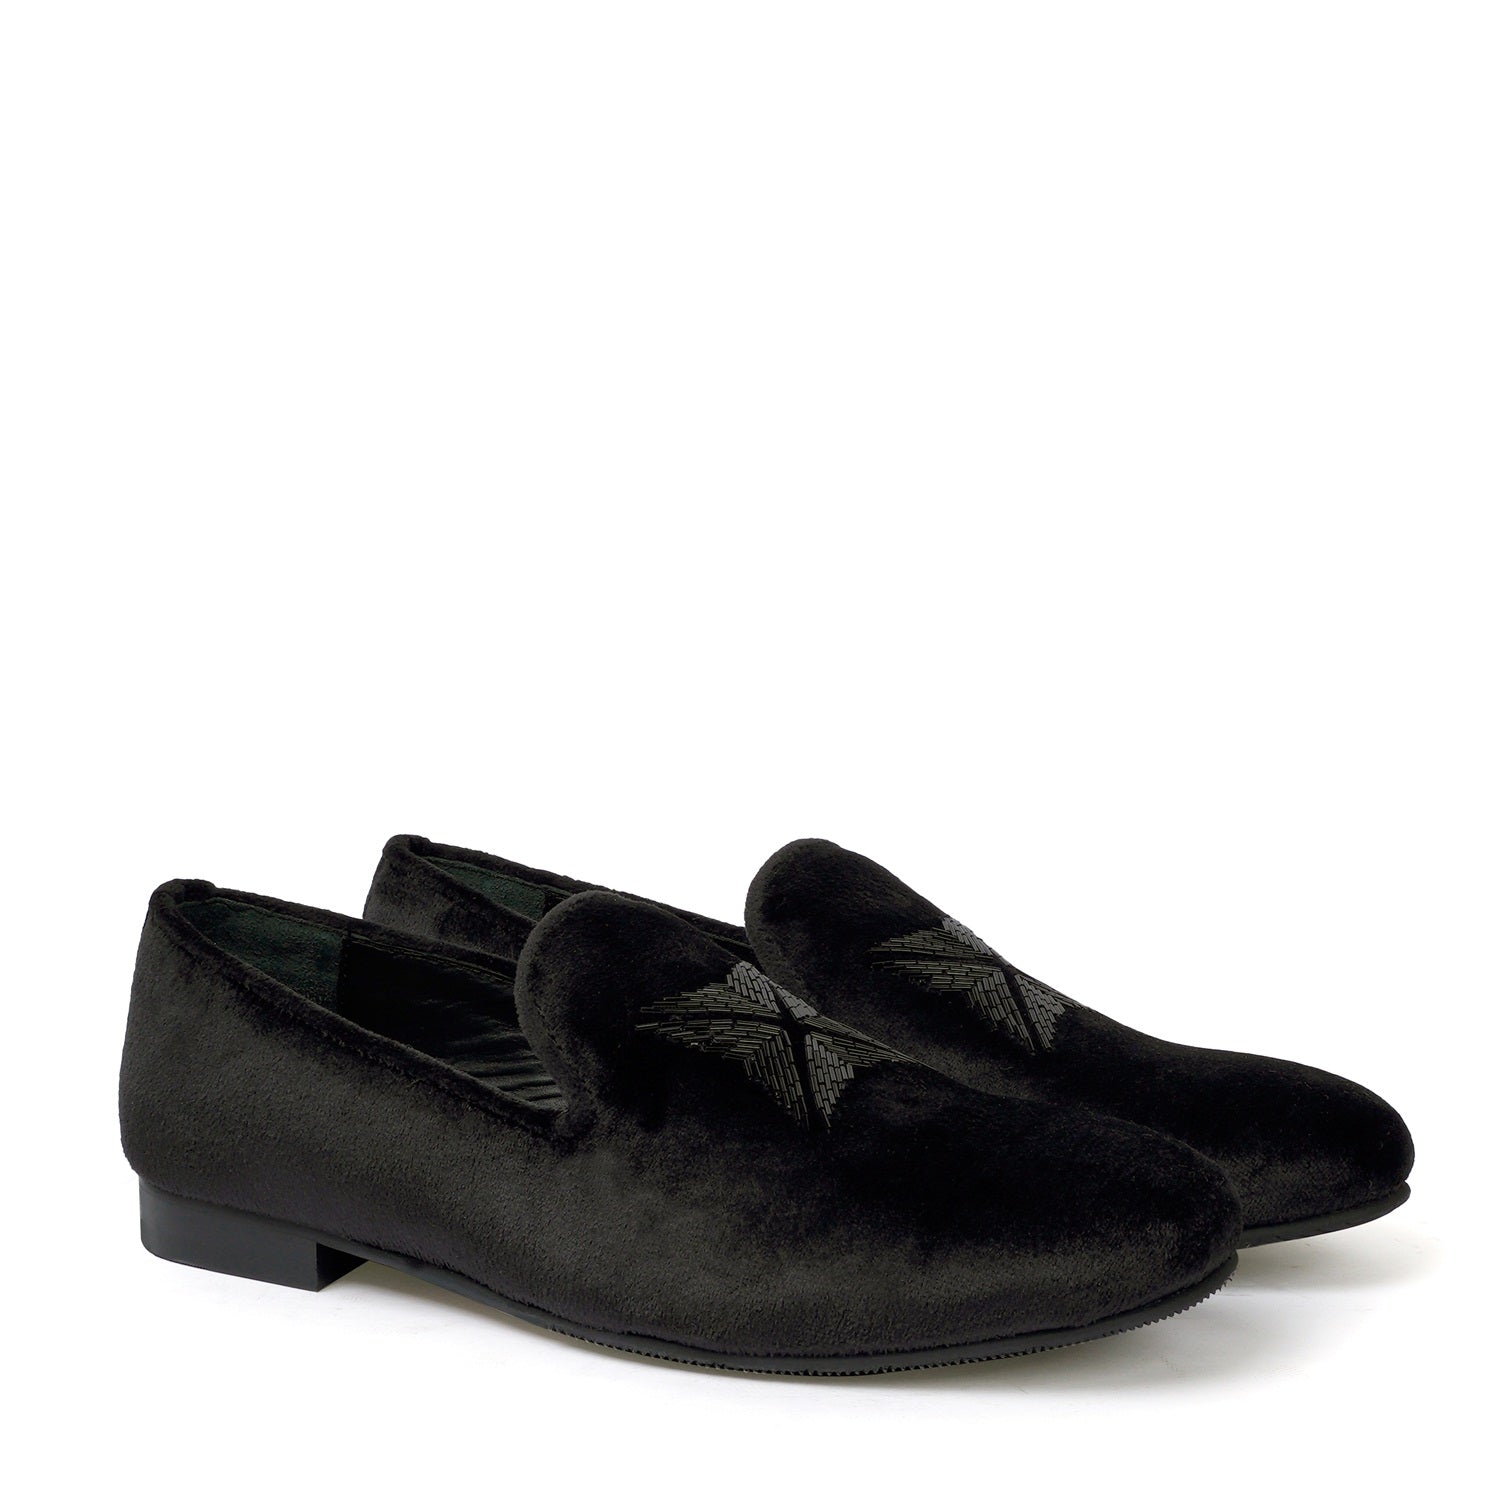 Black Velvet Zardosi Beads Slip-On Shoes